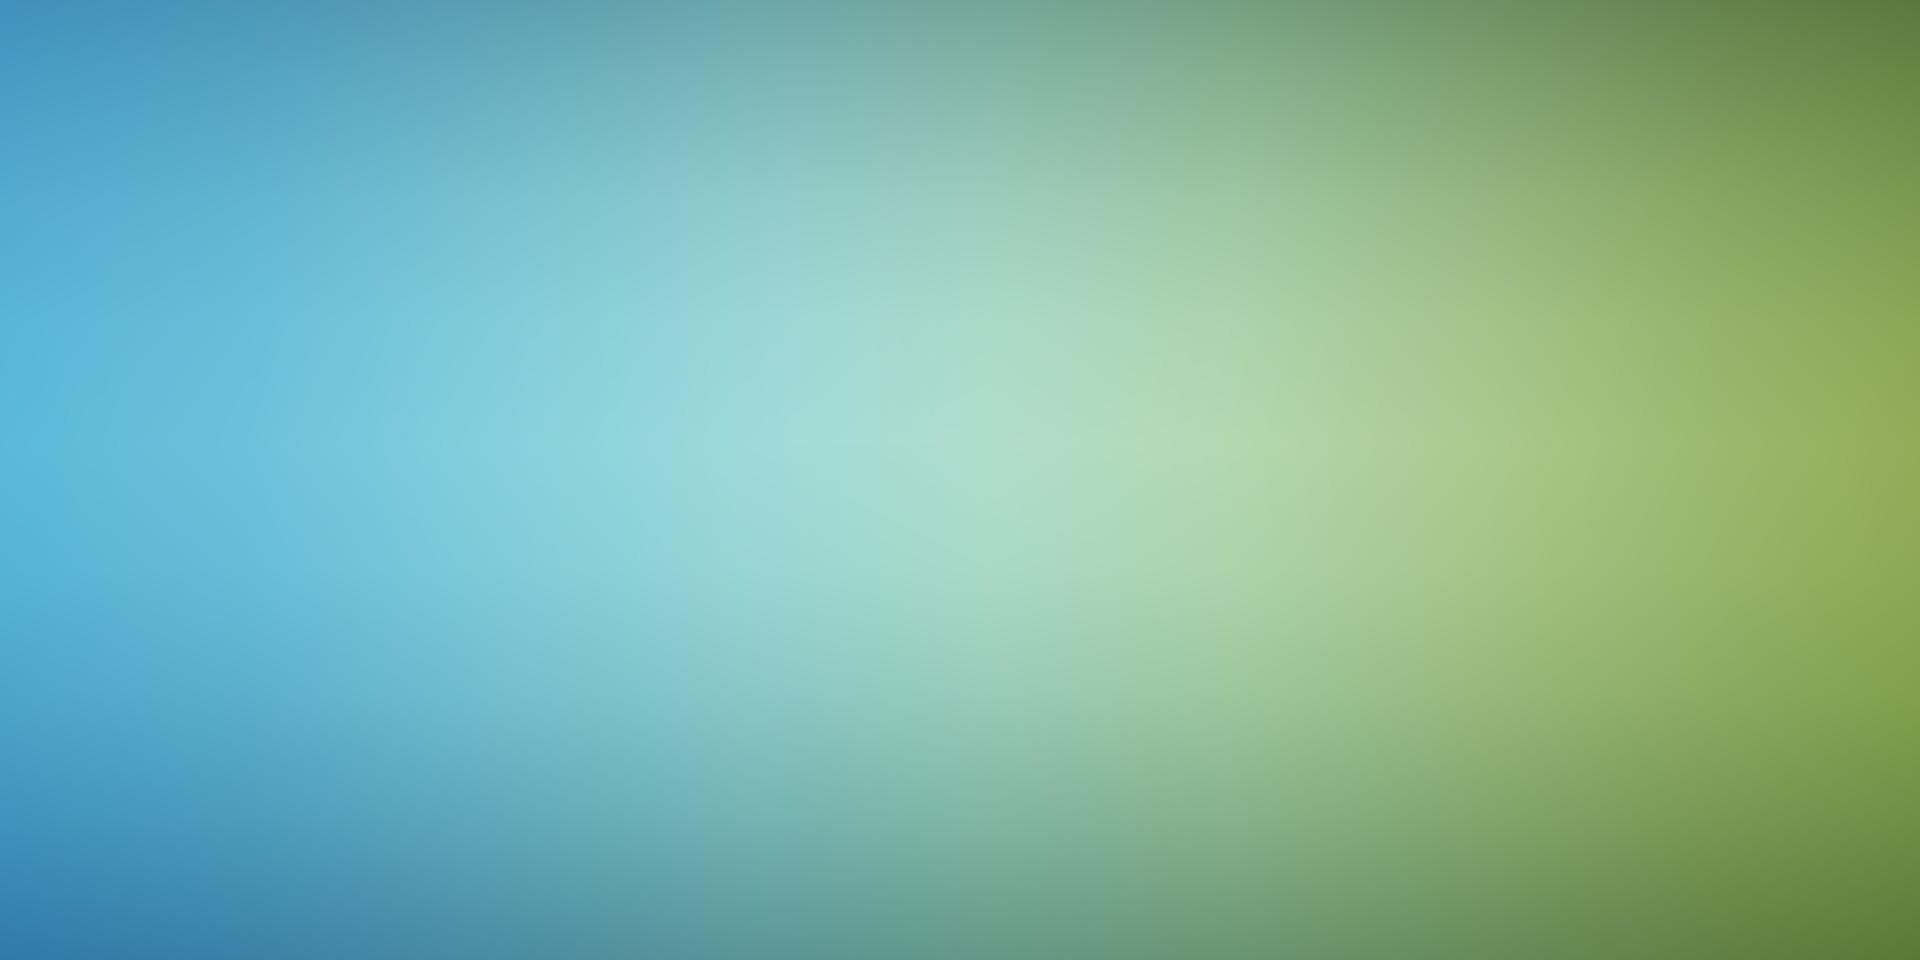 textura borrosa inteligente vector azul claro, verde.